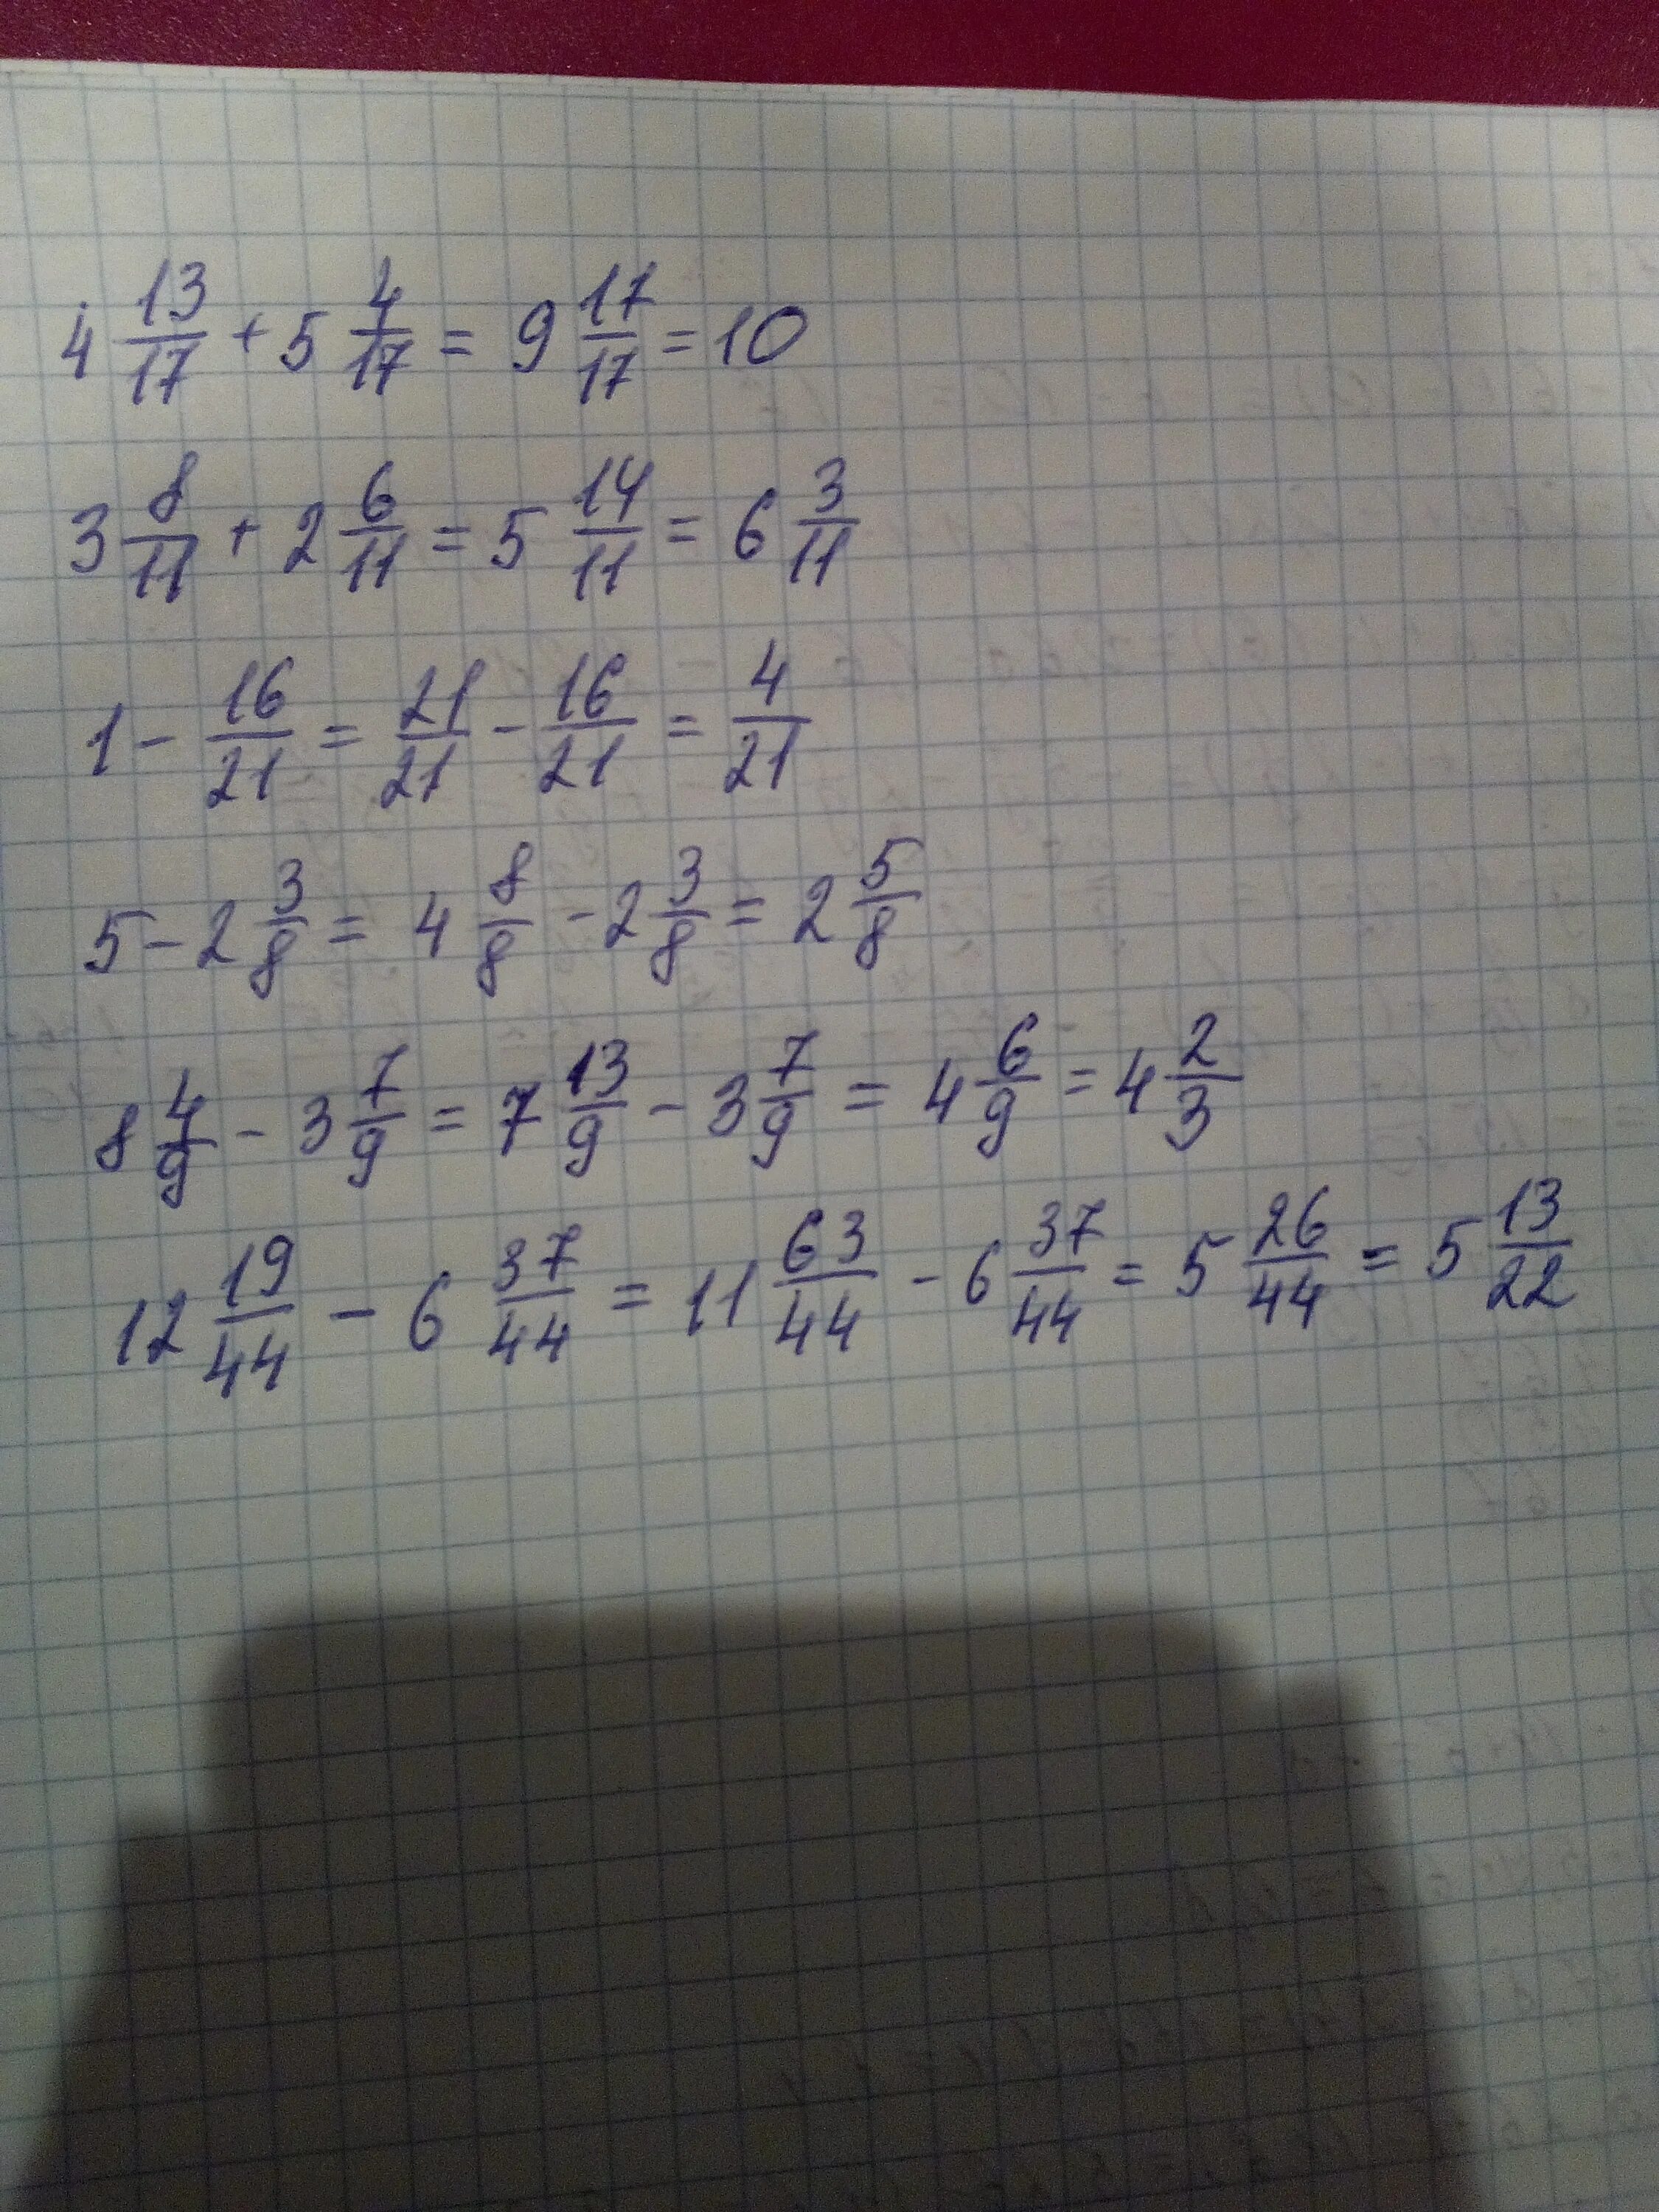 5 3 11 13 1 2. (5 1/16-1 1/8)×(5/6+3/15). (2/5-6,6) :(1 1/4- 11/3) Решение. (6 3/4-5 2/5) +(3 4/5+2 1/5) Решение. (9-2 3/11)+(2+1 9/11) Решение.